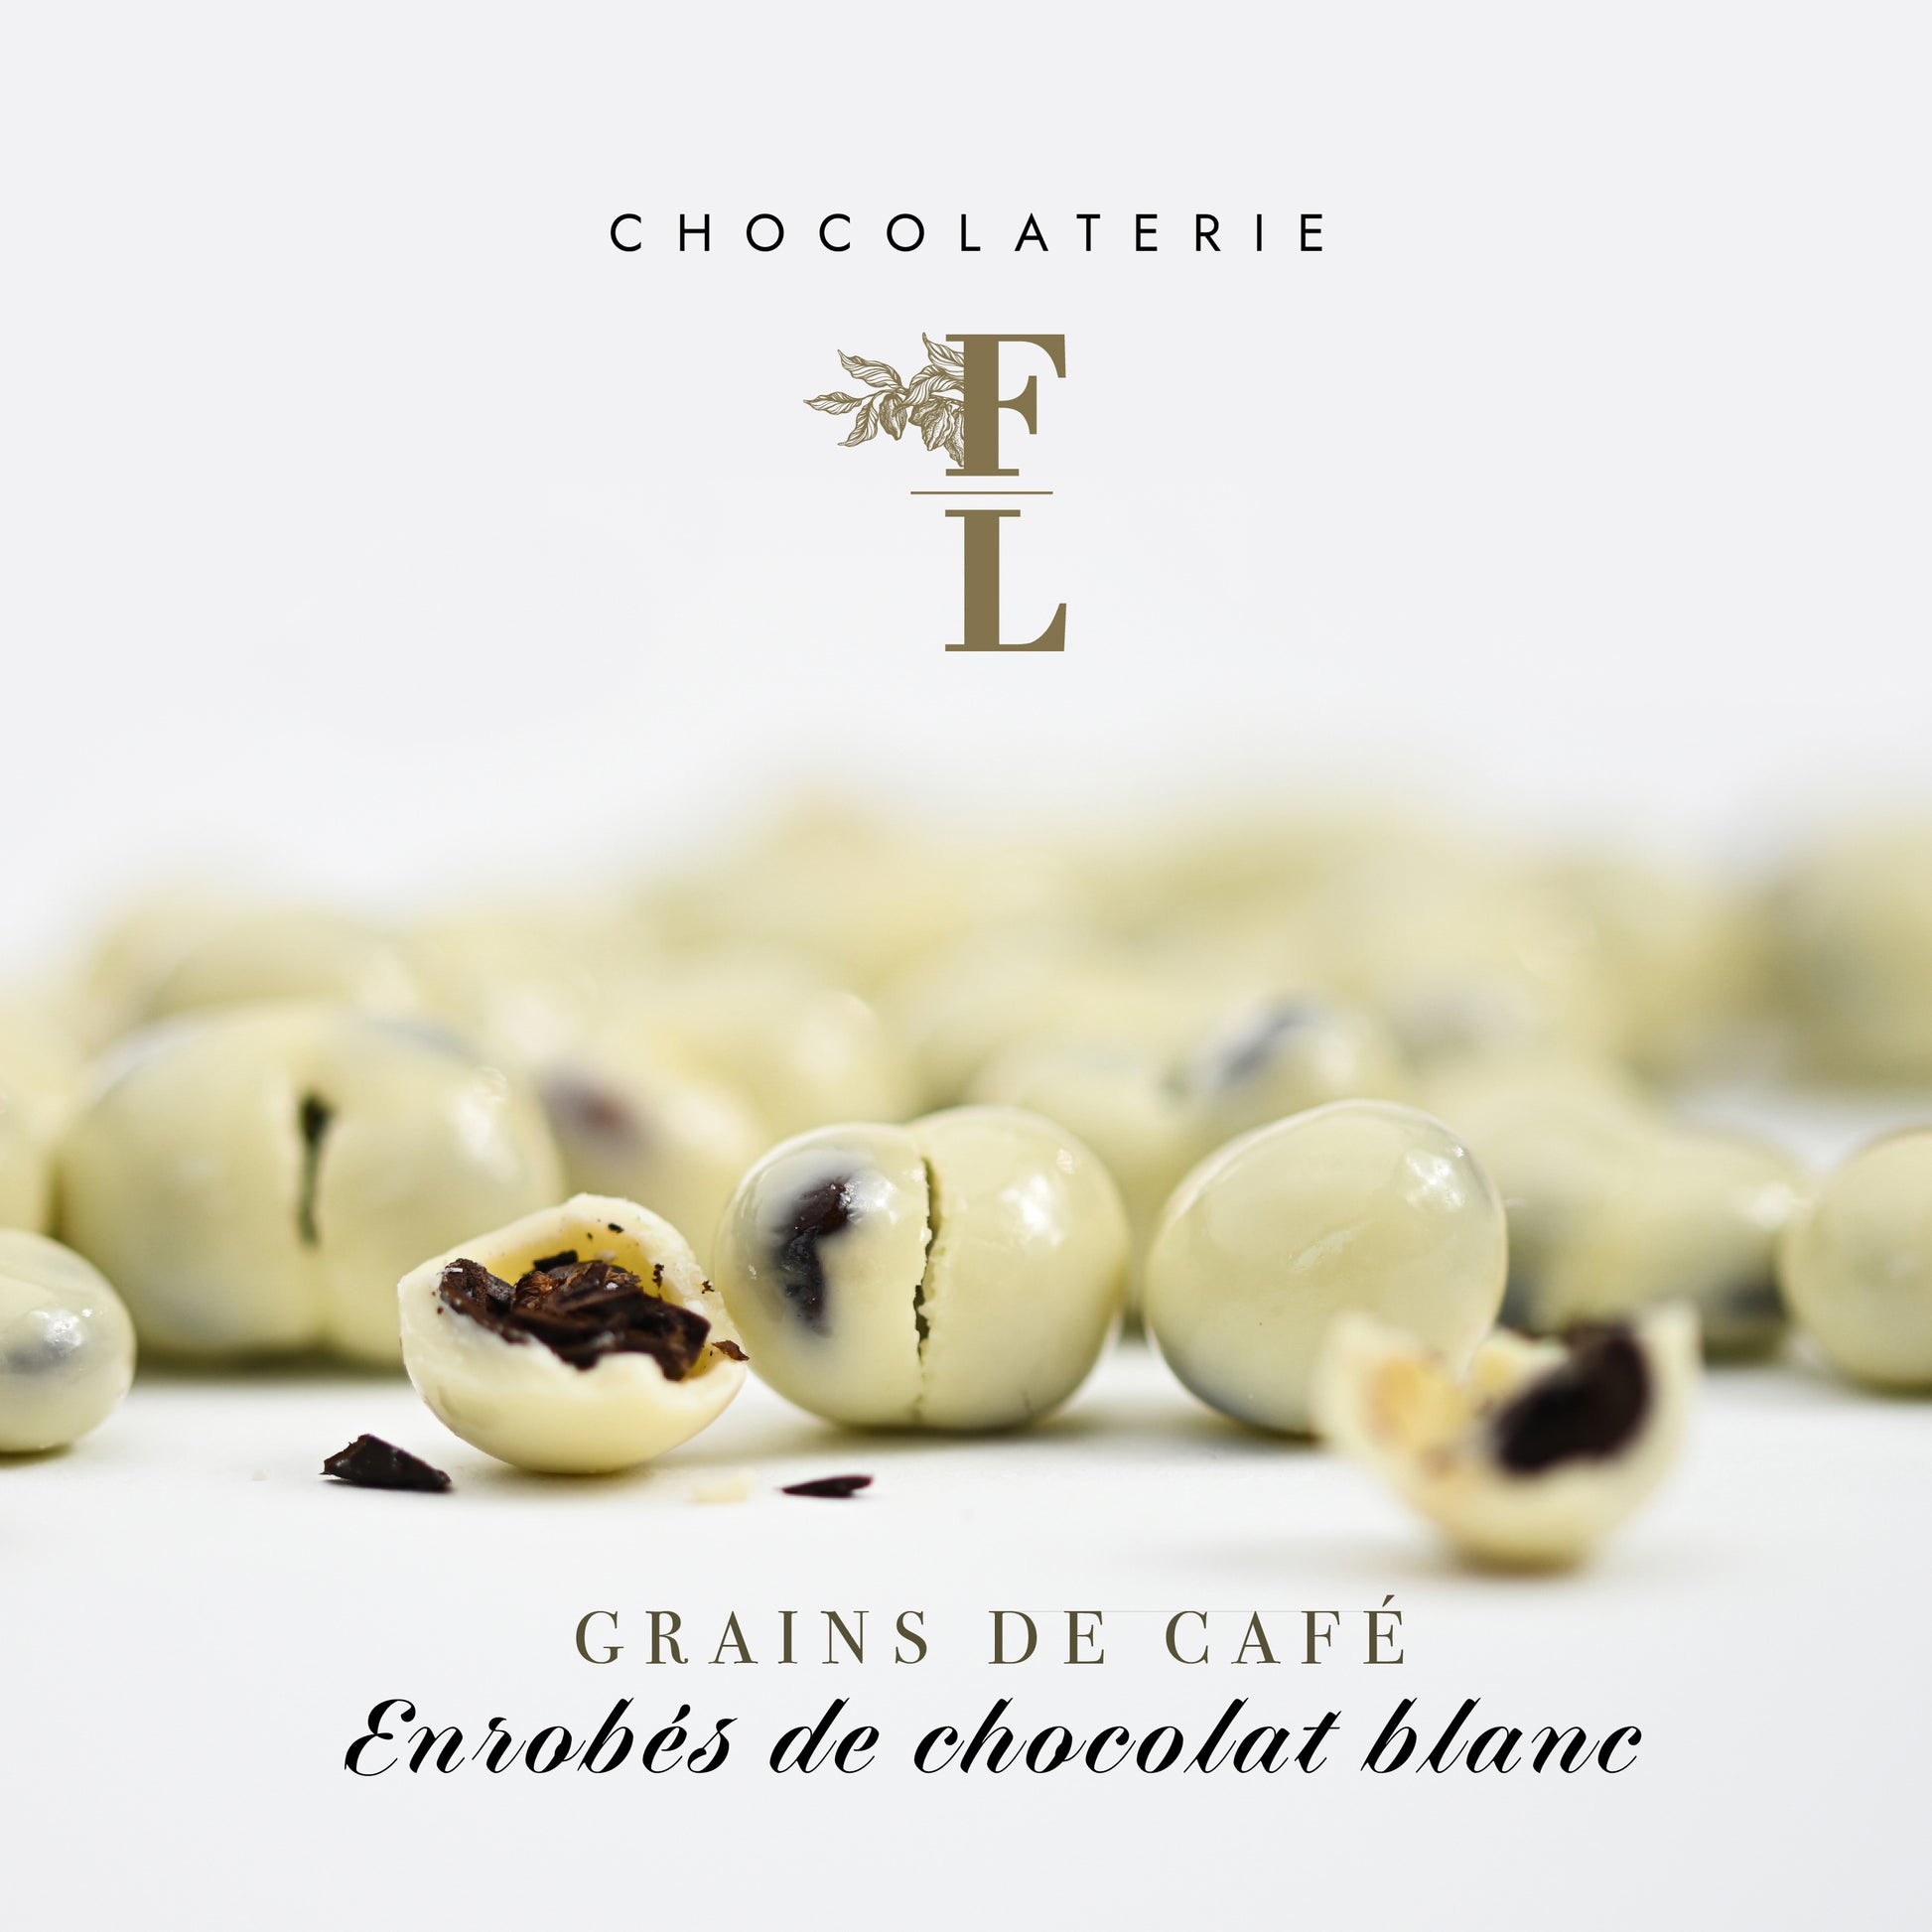 Grains de café enrobés de chocolat blanc - Un délice raffiné